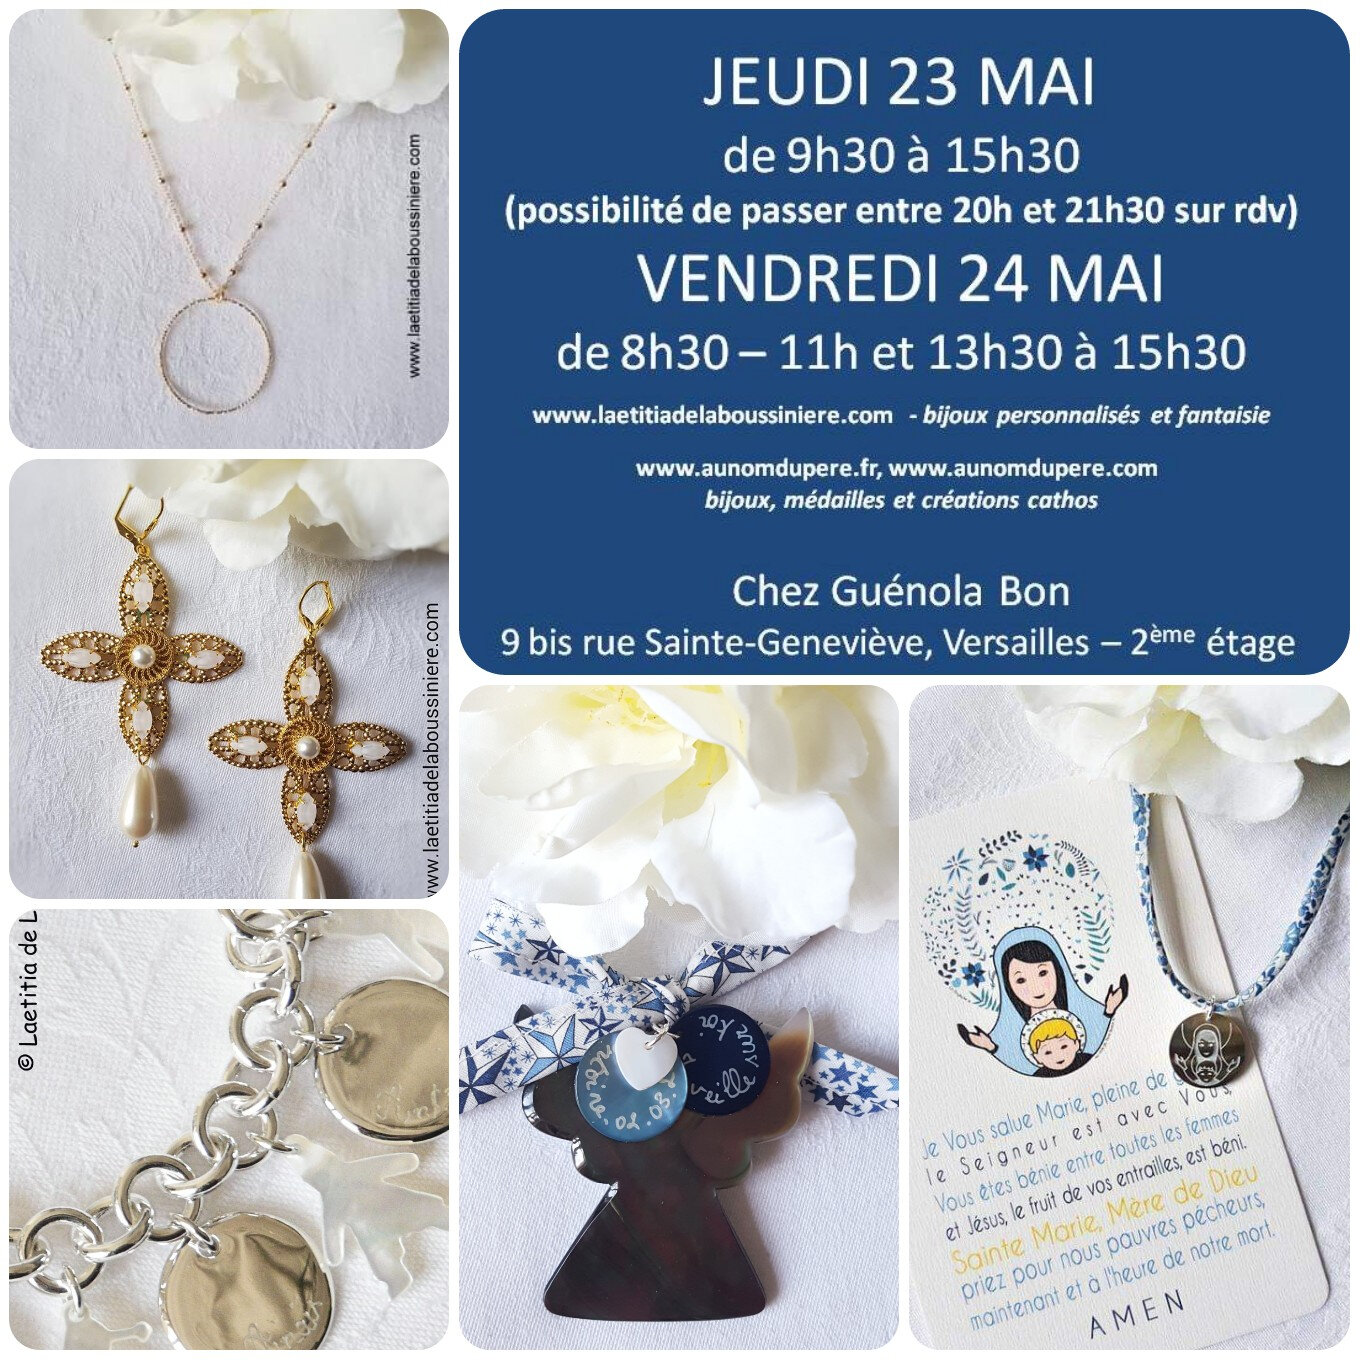 Invitation pour la vente à Versailles 23-24 mai 2019